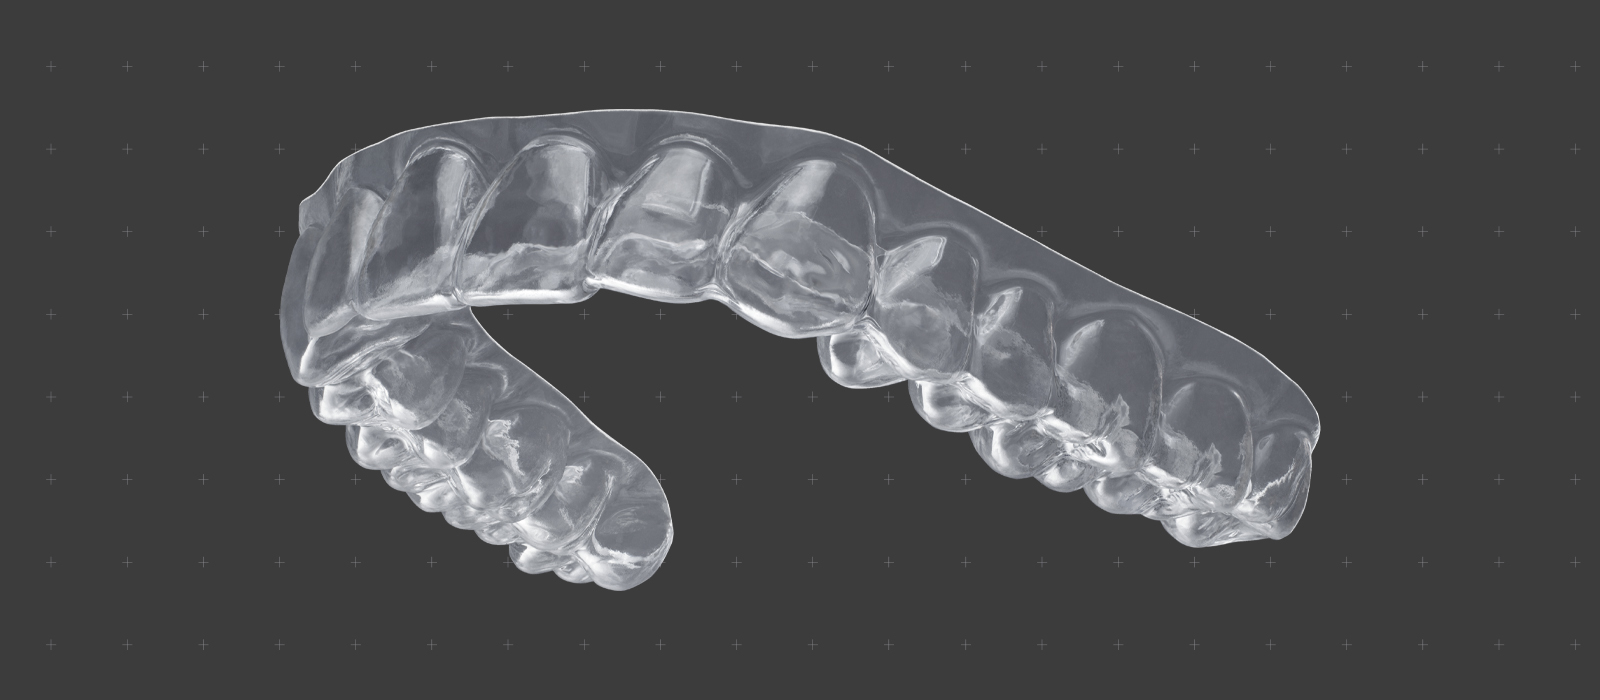 Стоматология – Диафрагмы для ортодонтических аппаратов